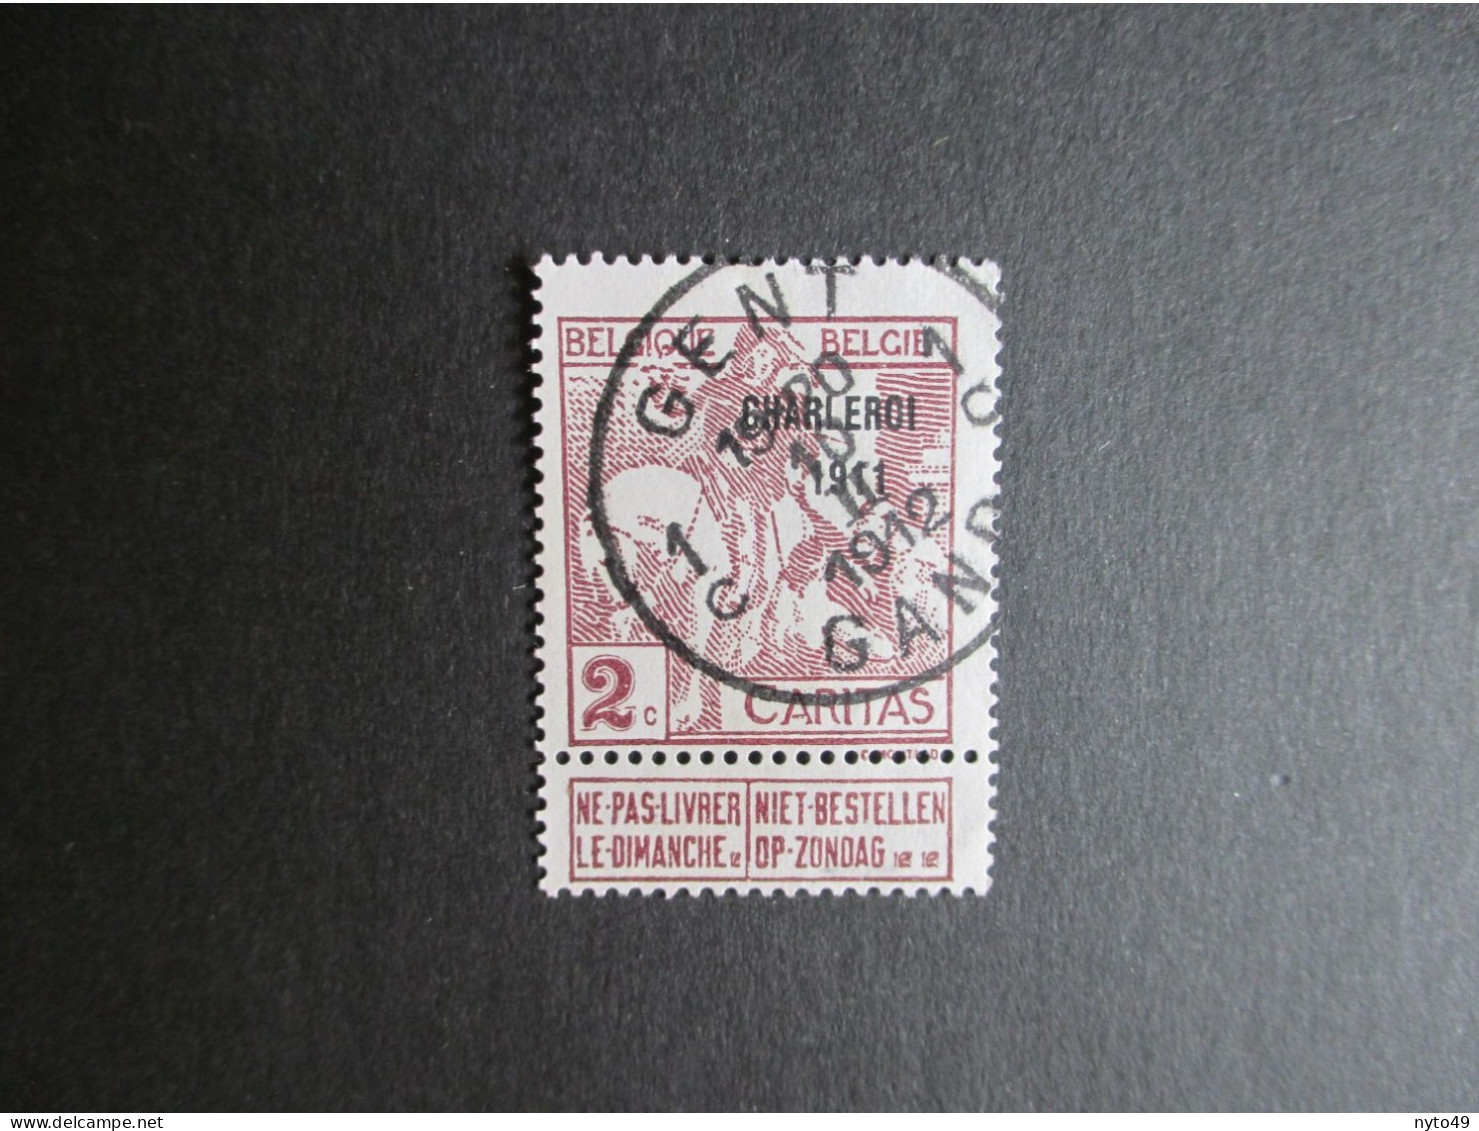 Nr 102 - Charleroi 1911 - Centrale Stempel Gent 1c - 1910-1911 Caritas